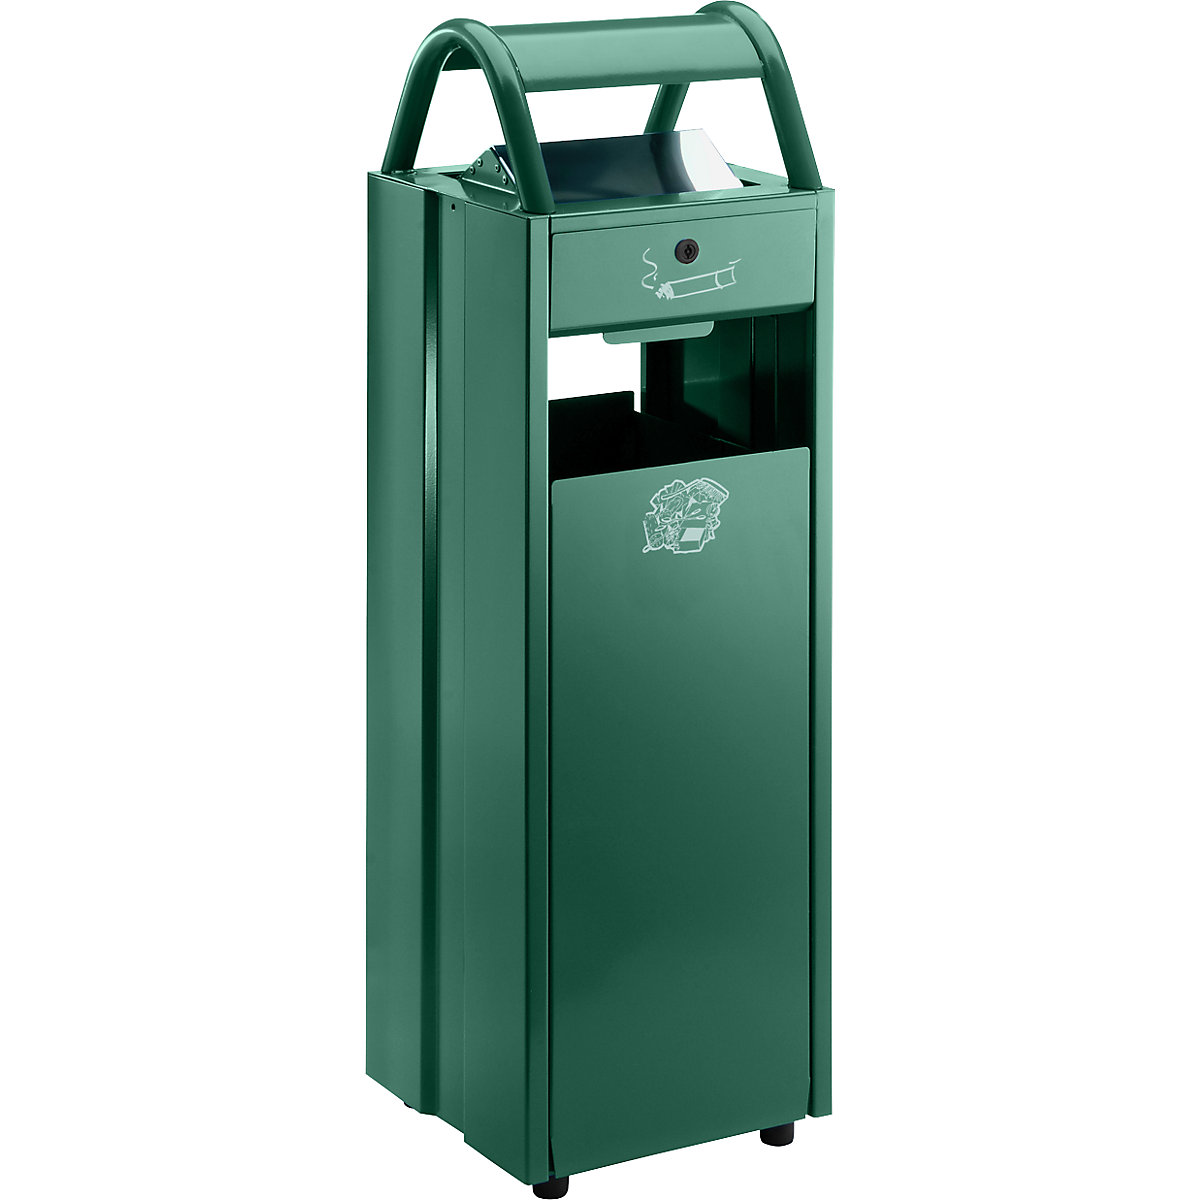 VAR – Collecteur de déchets avec cendrier et toit de protection, capacité 35 l, l x h x p 300 x 960 x 250 mm, vert mousse RAL 6005